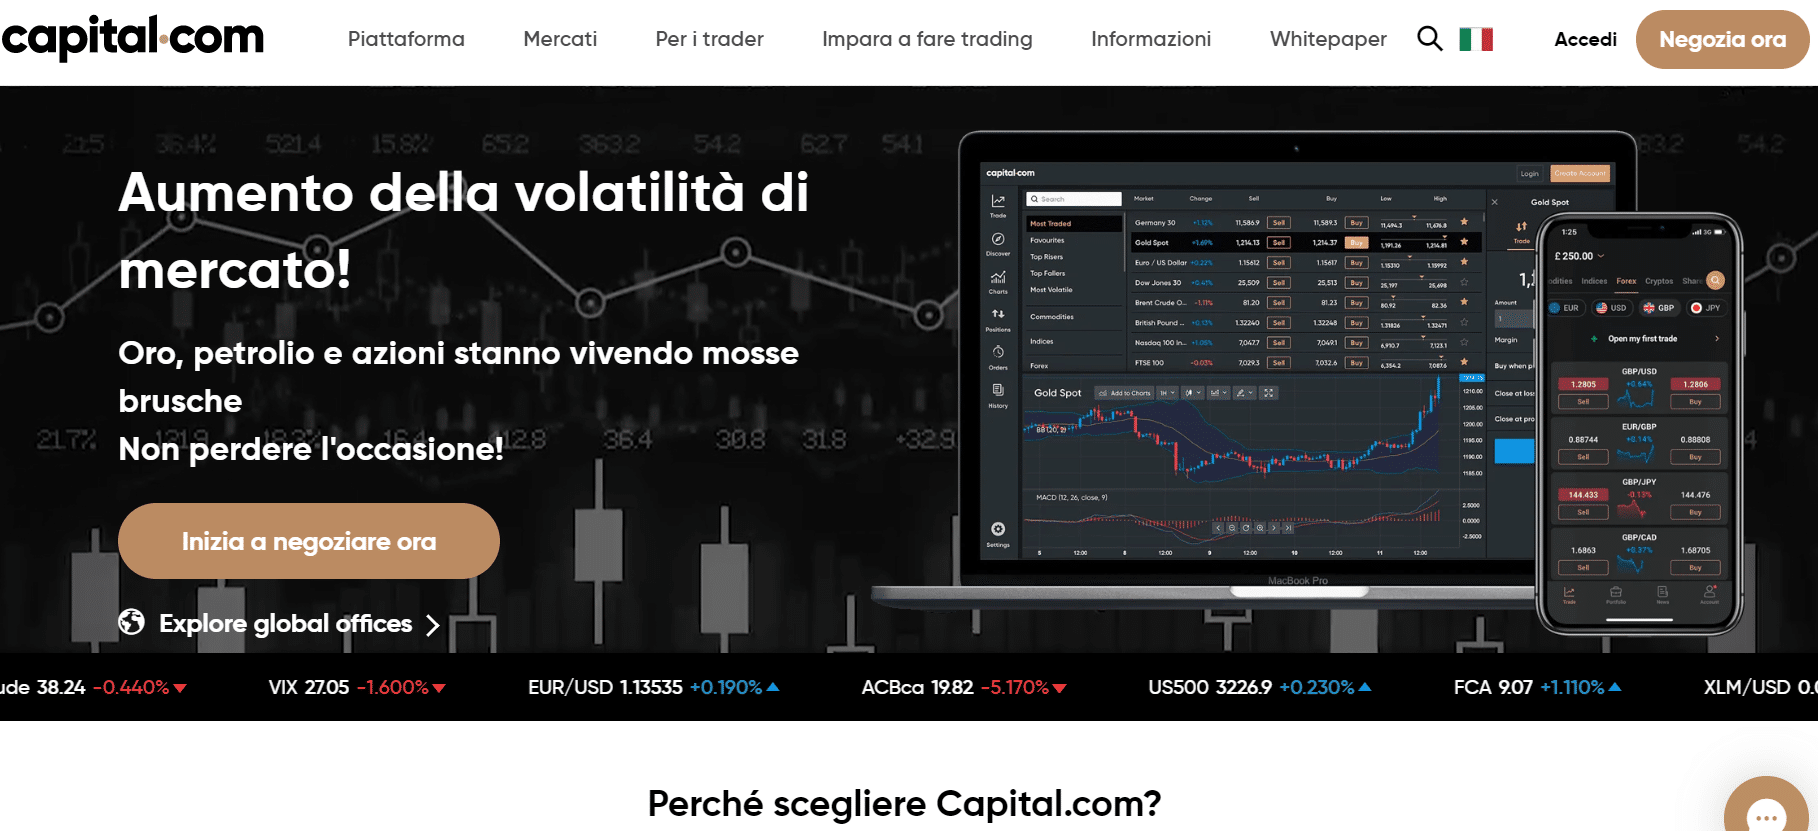 5 migliori broker criptovalute italiani per trading bitcoin [2021]